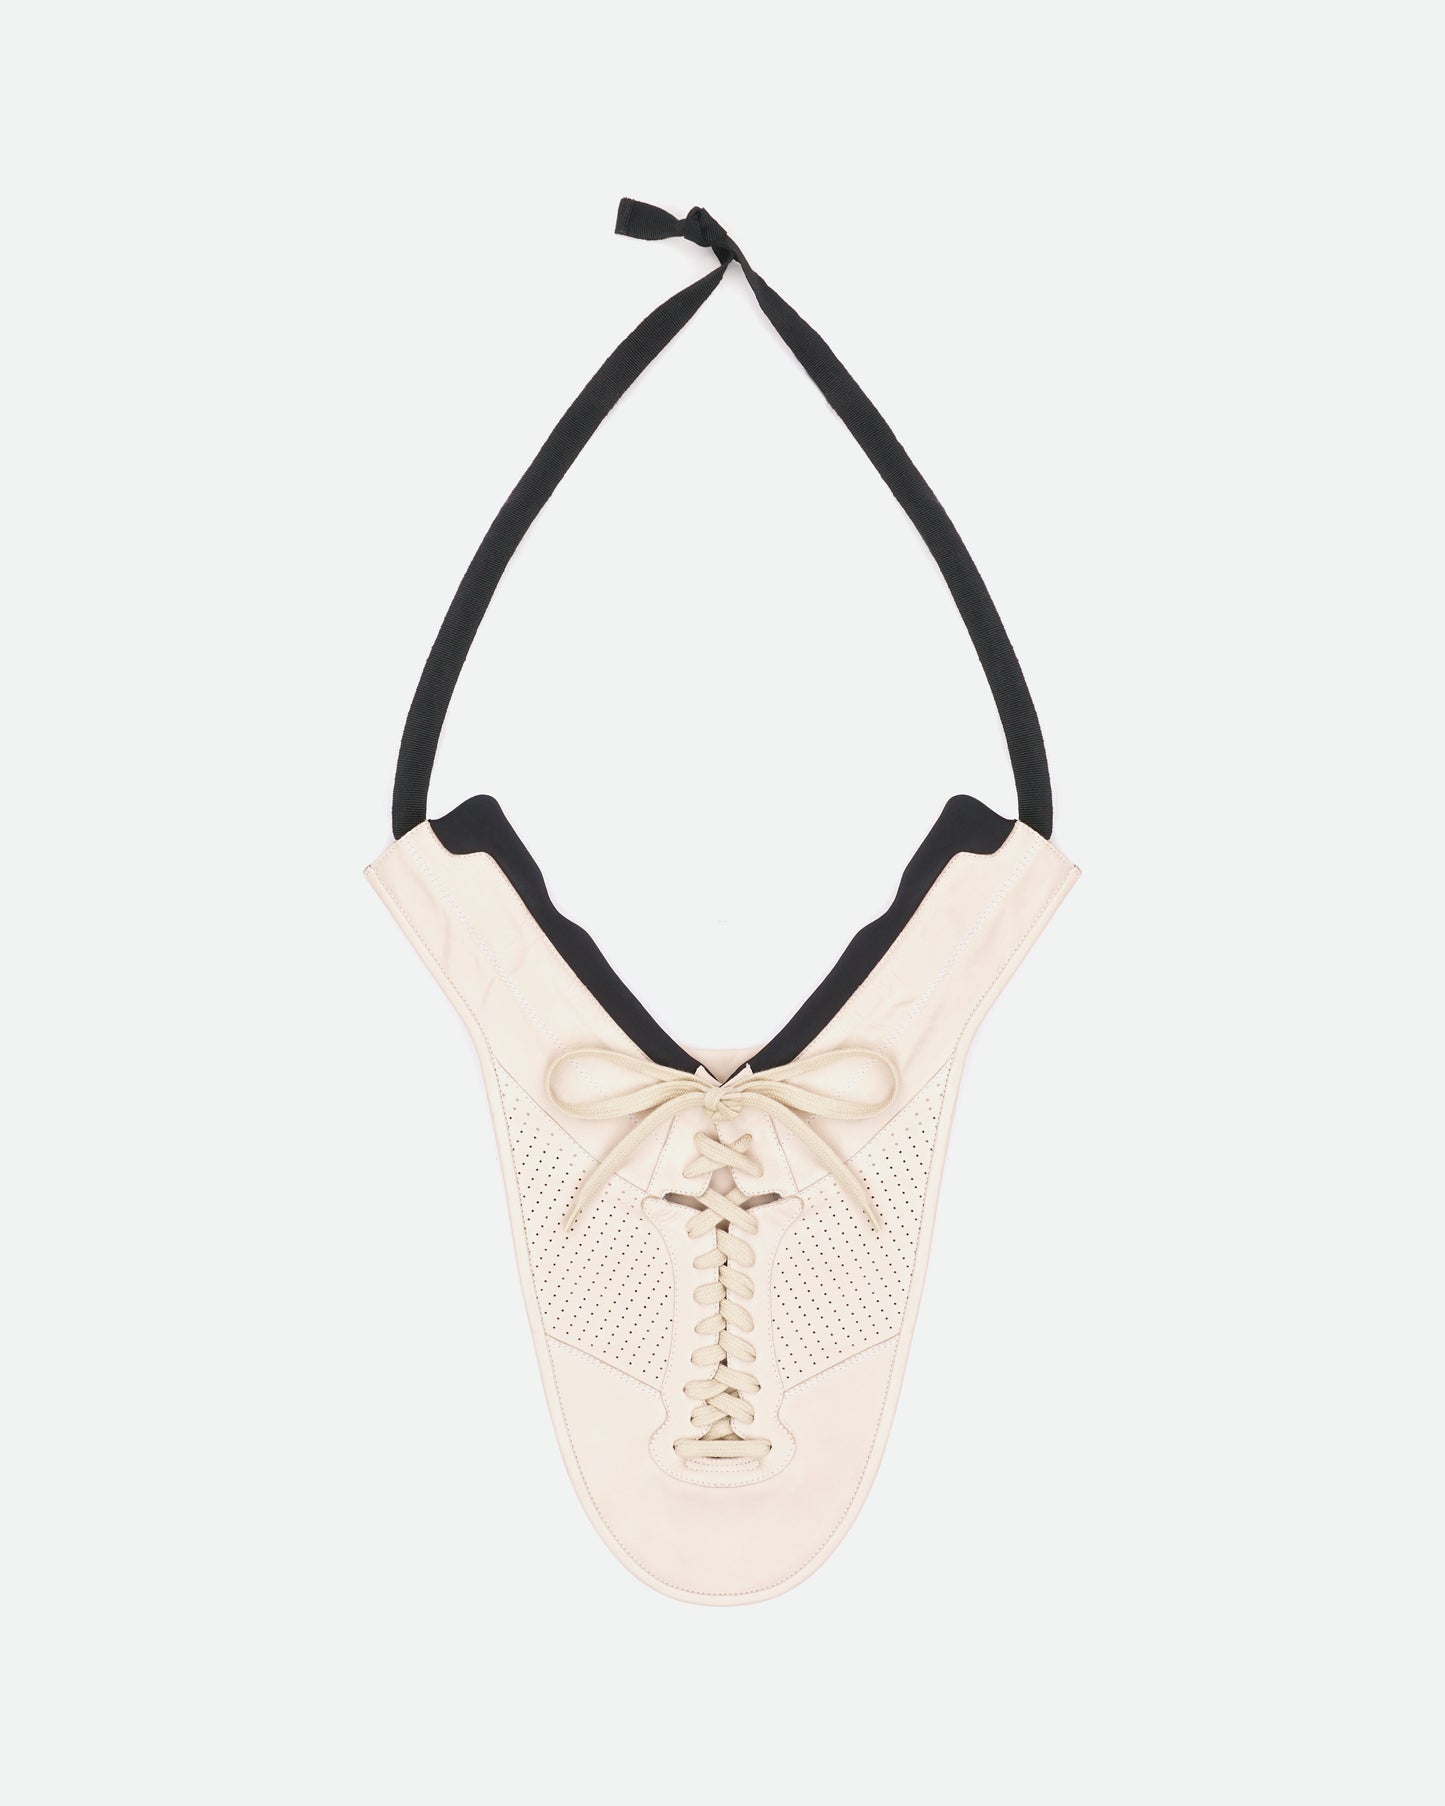 Maison Margiela AW14 Artisanal Shoe Bib Necklace